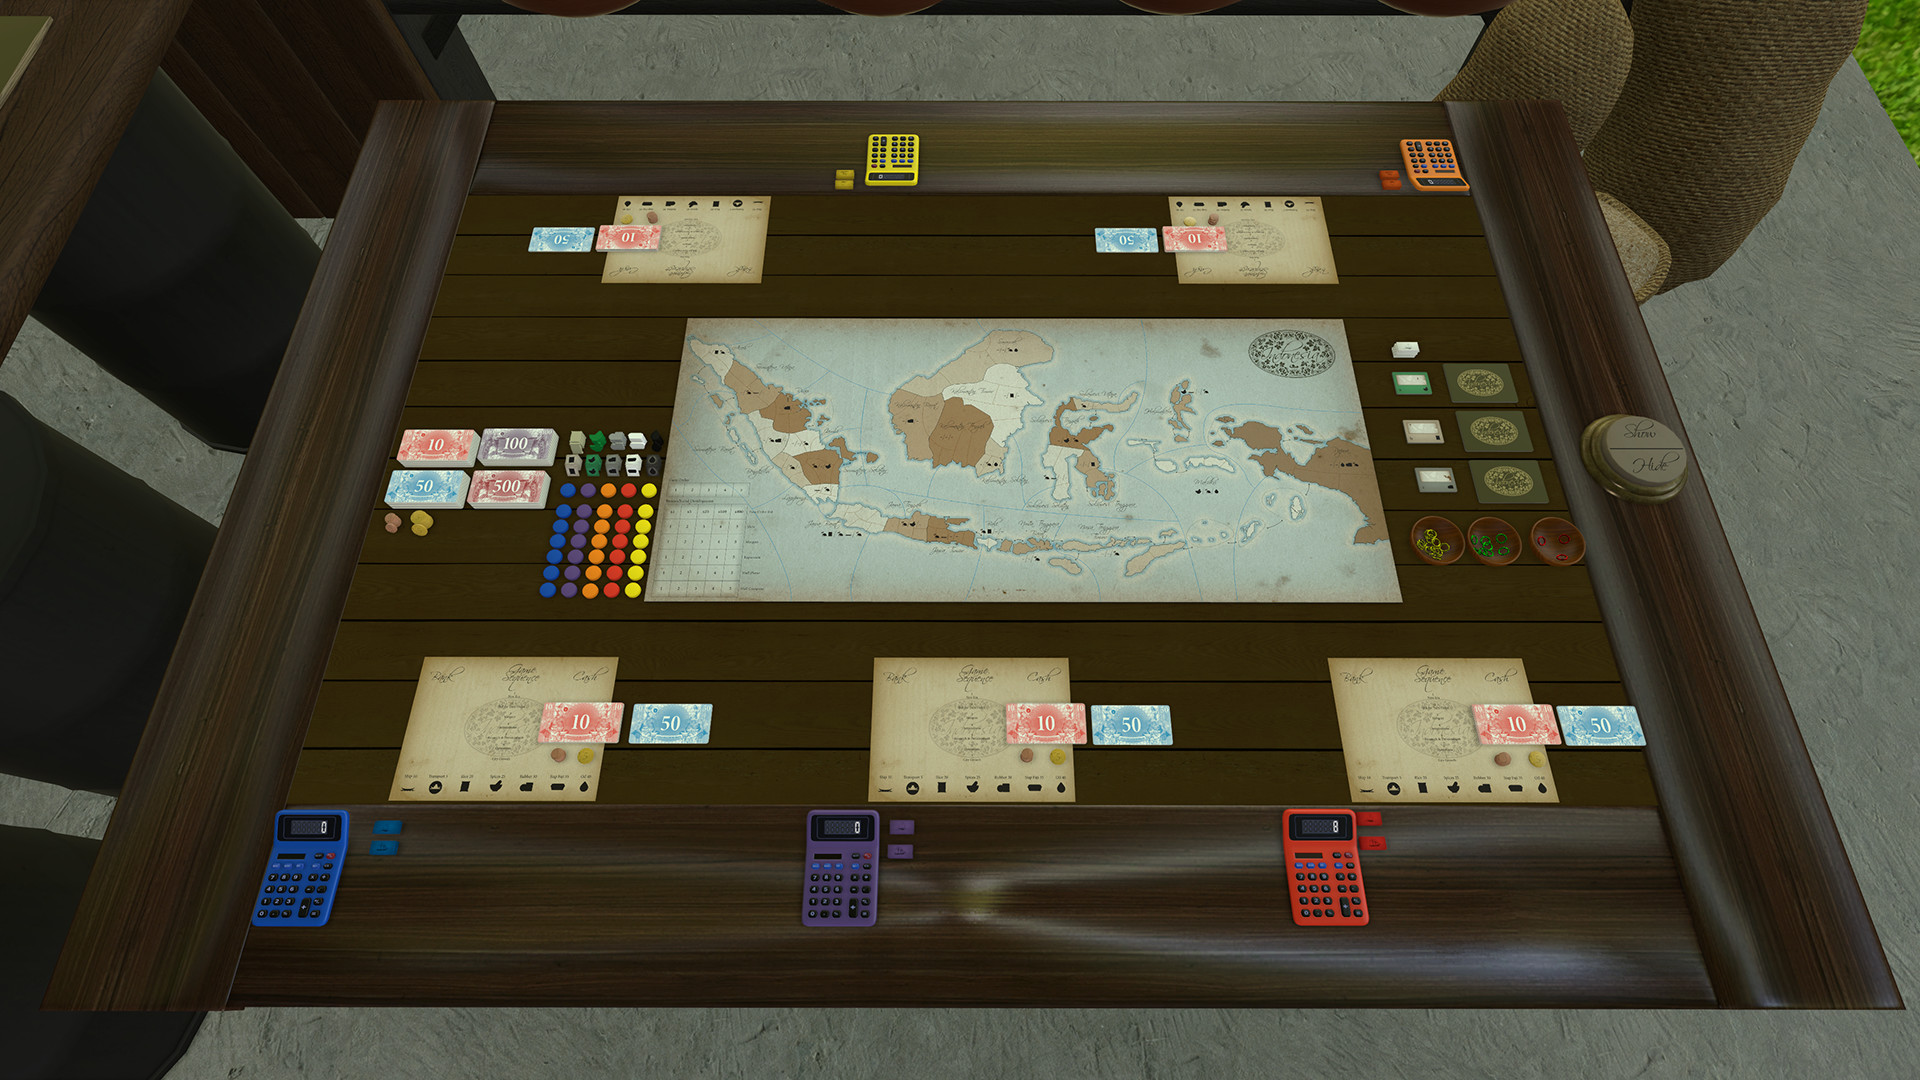 Tabletop Simulator on Steam